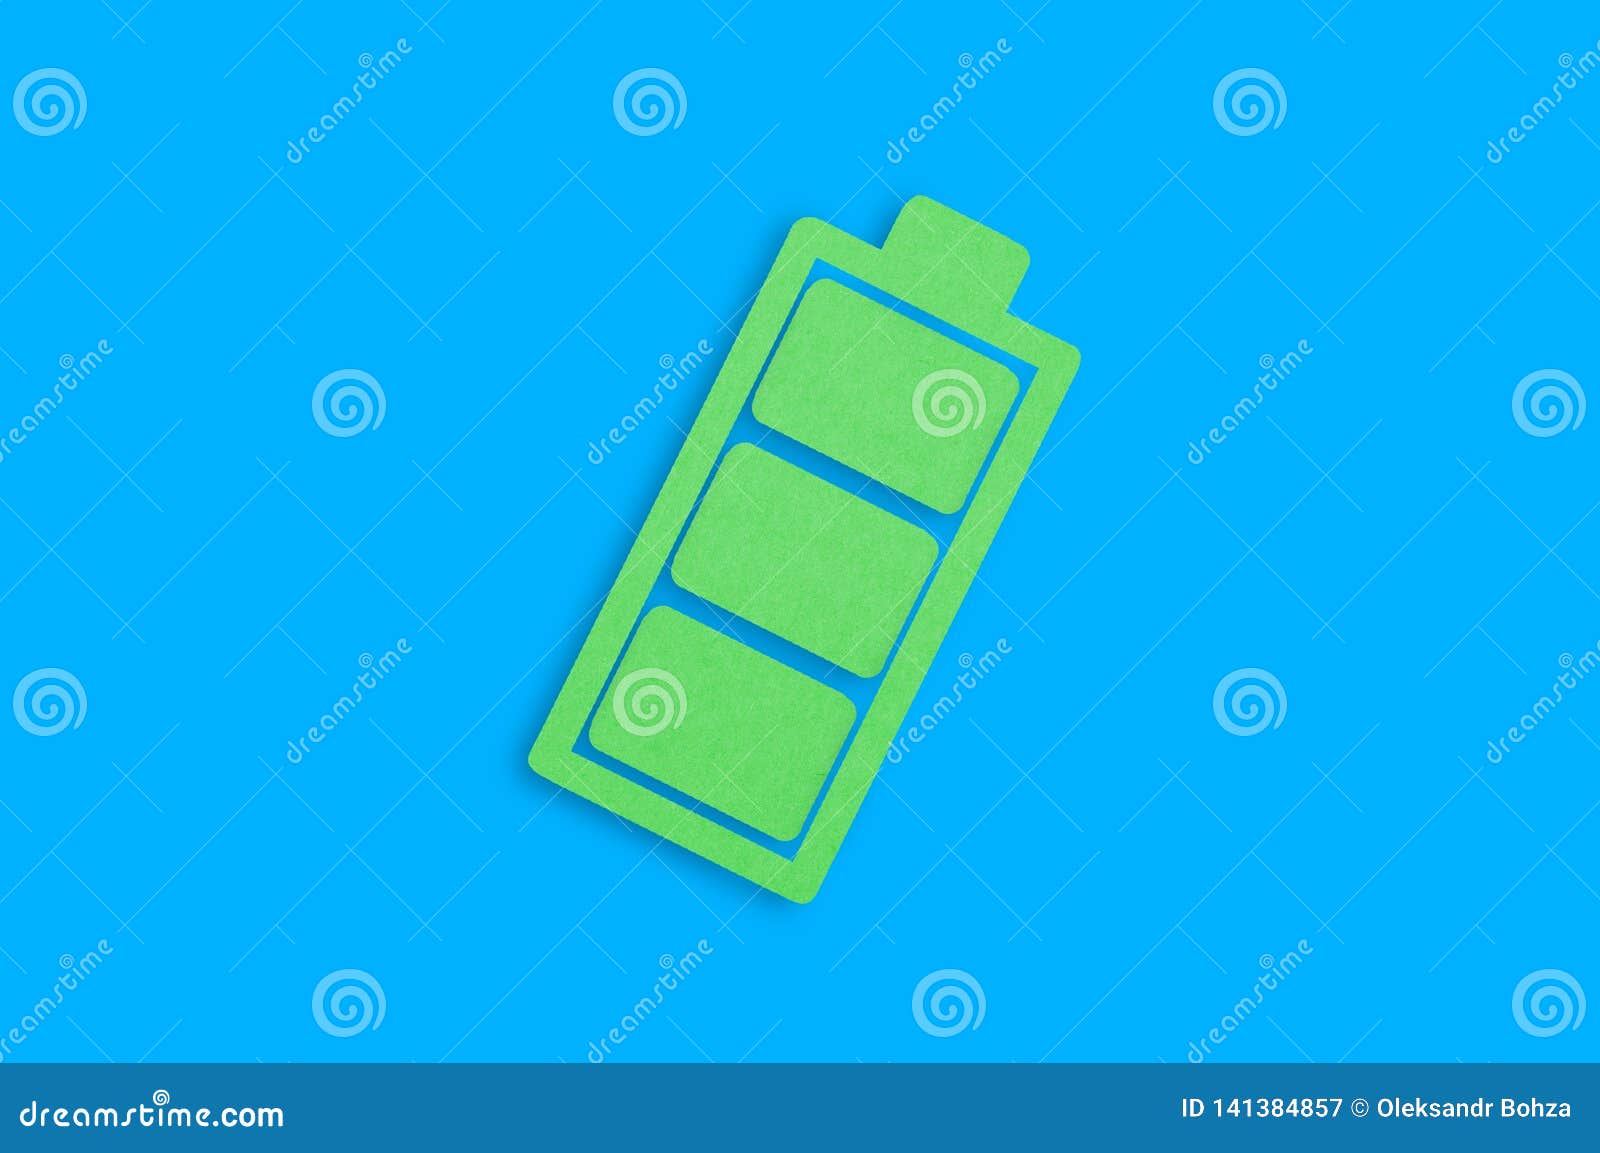 Één met de hand gemaakt document pictogram van volledige batterij in centrum van blauwe lijst Hoogste mening Groen energieconcept